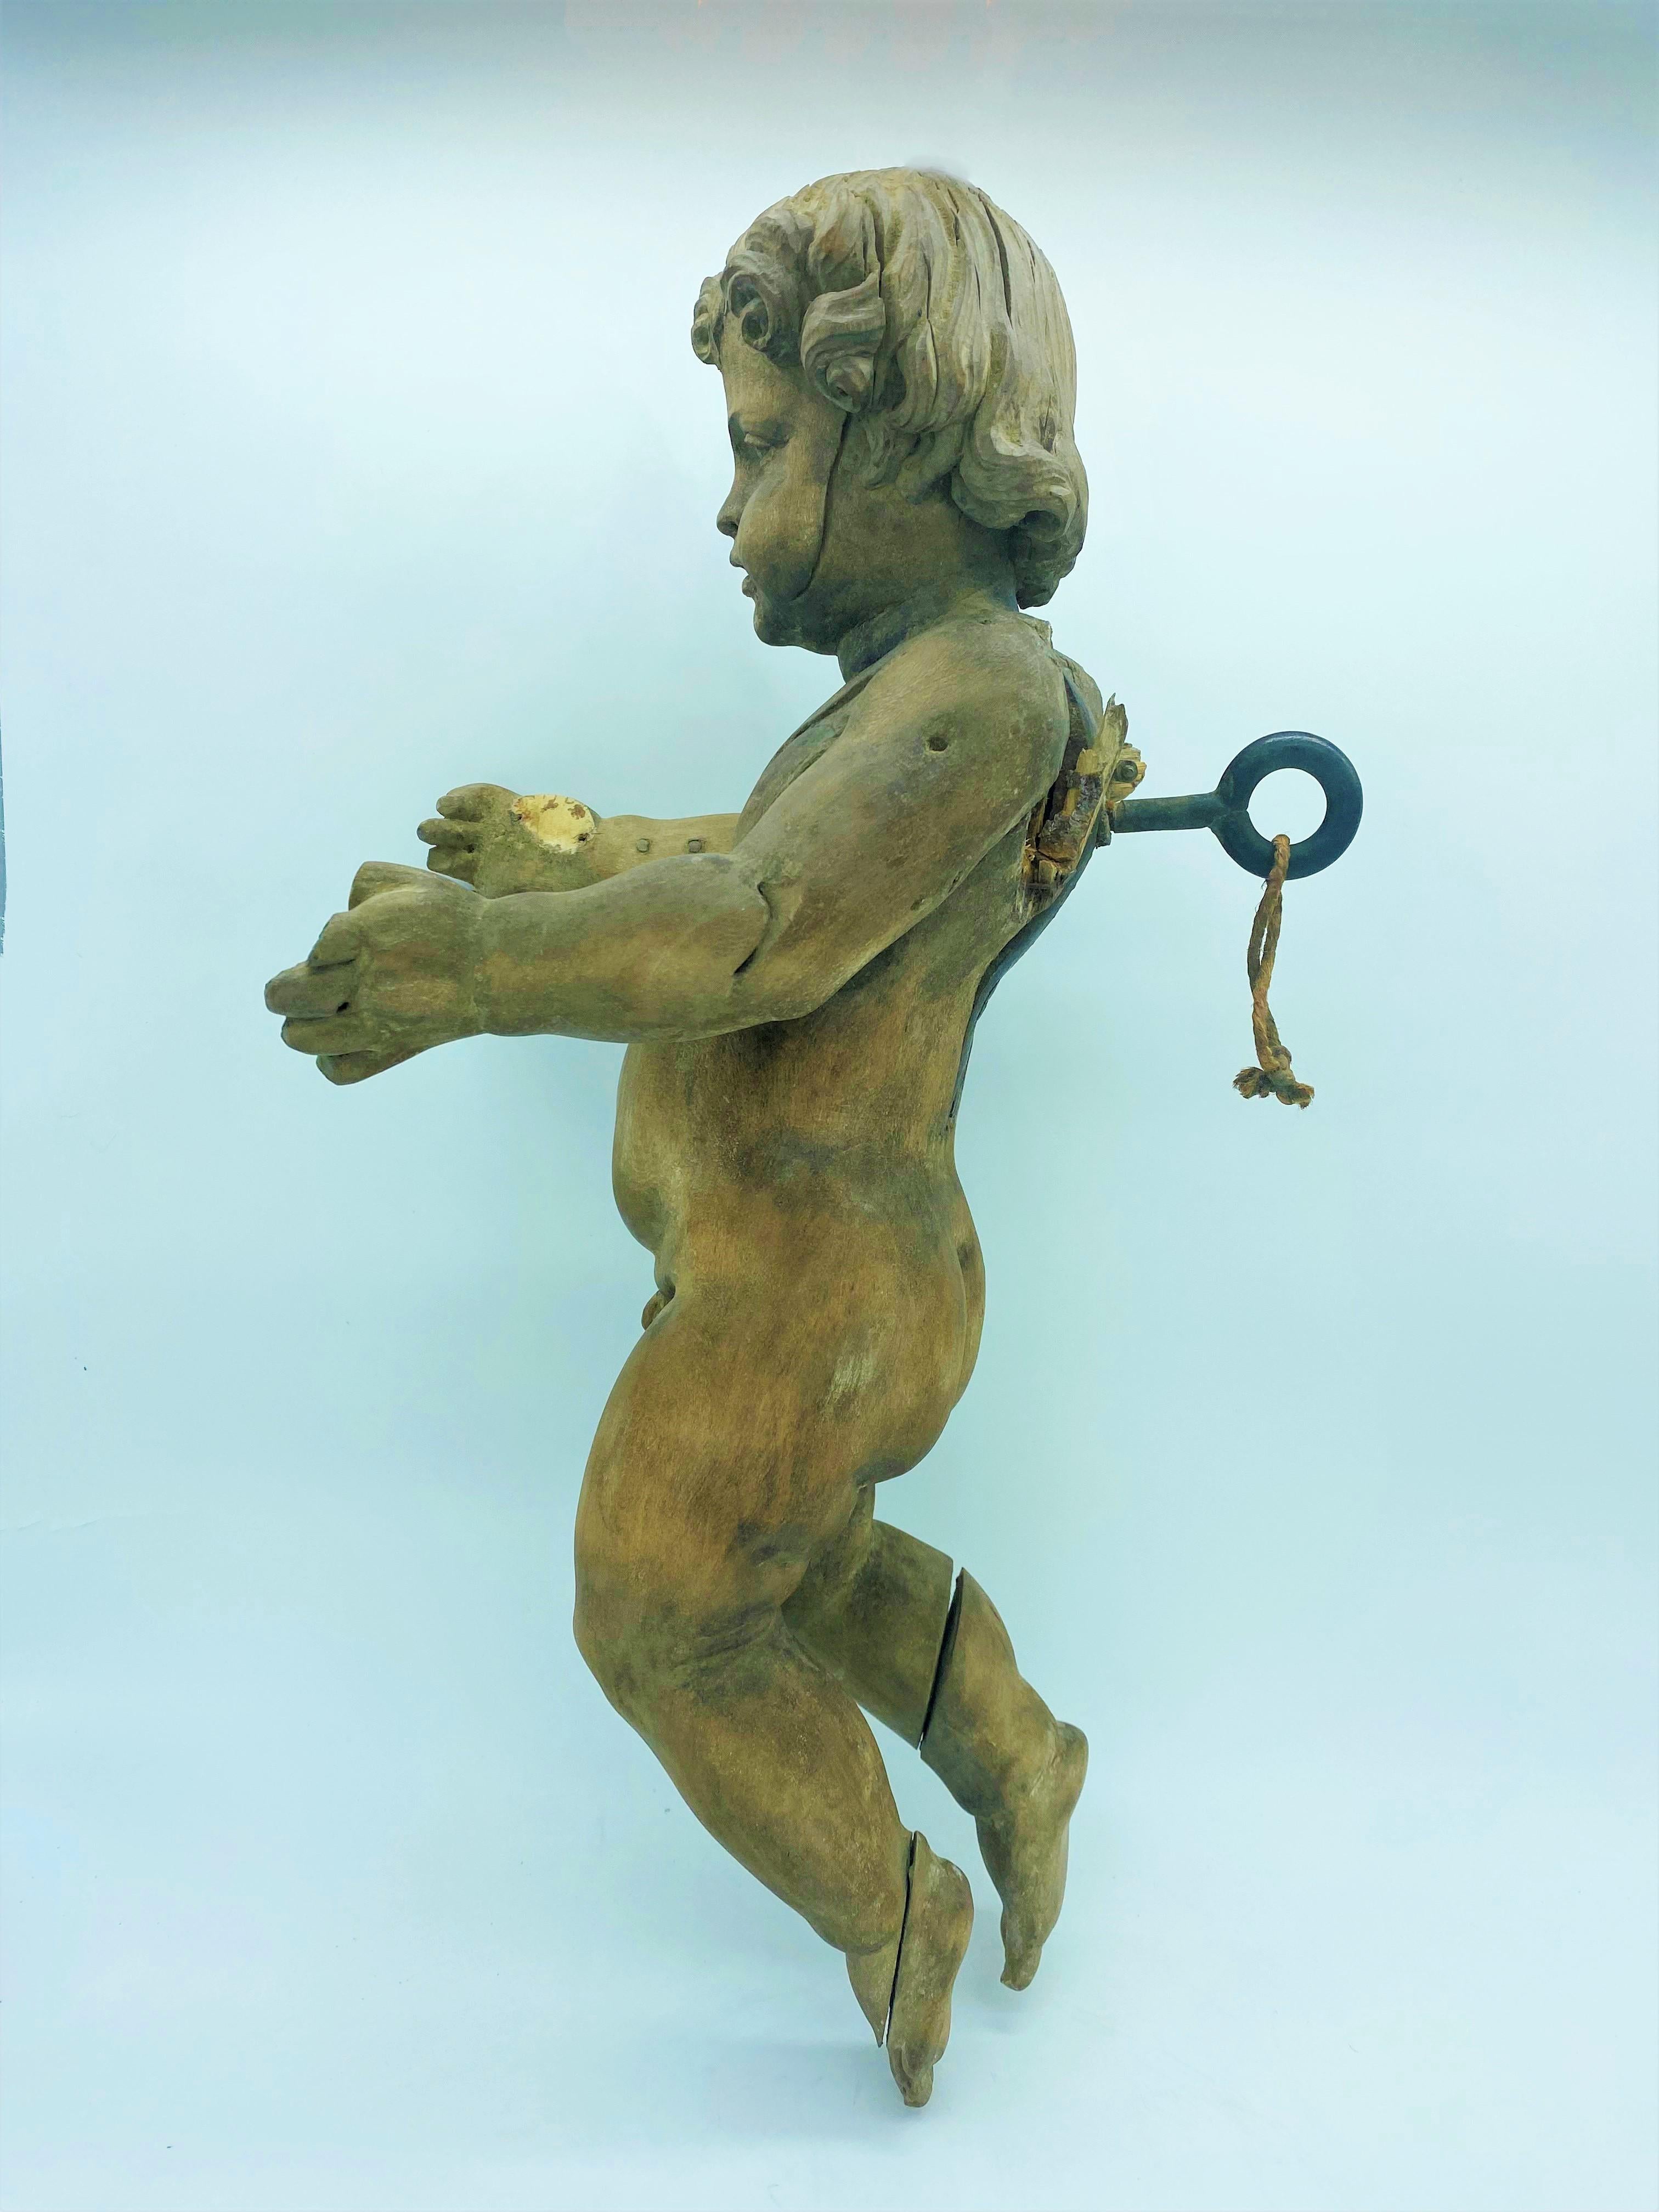 Belle statue en bois d'un Angelo de style baroque du 18e siècle.
Il est finement sculpté. Quelques anciennes restaurations sont à noter sur les pieds, et la main gauche. Les ailes arrière sont manquantes.